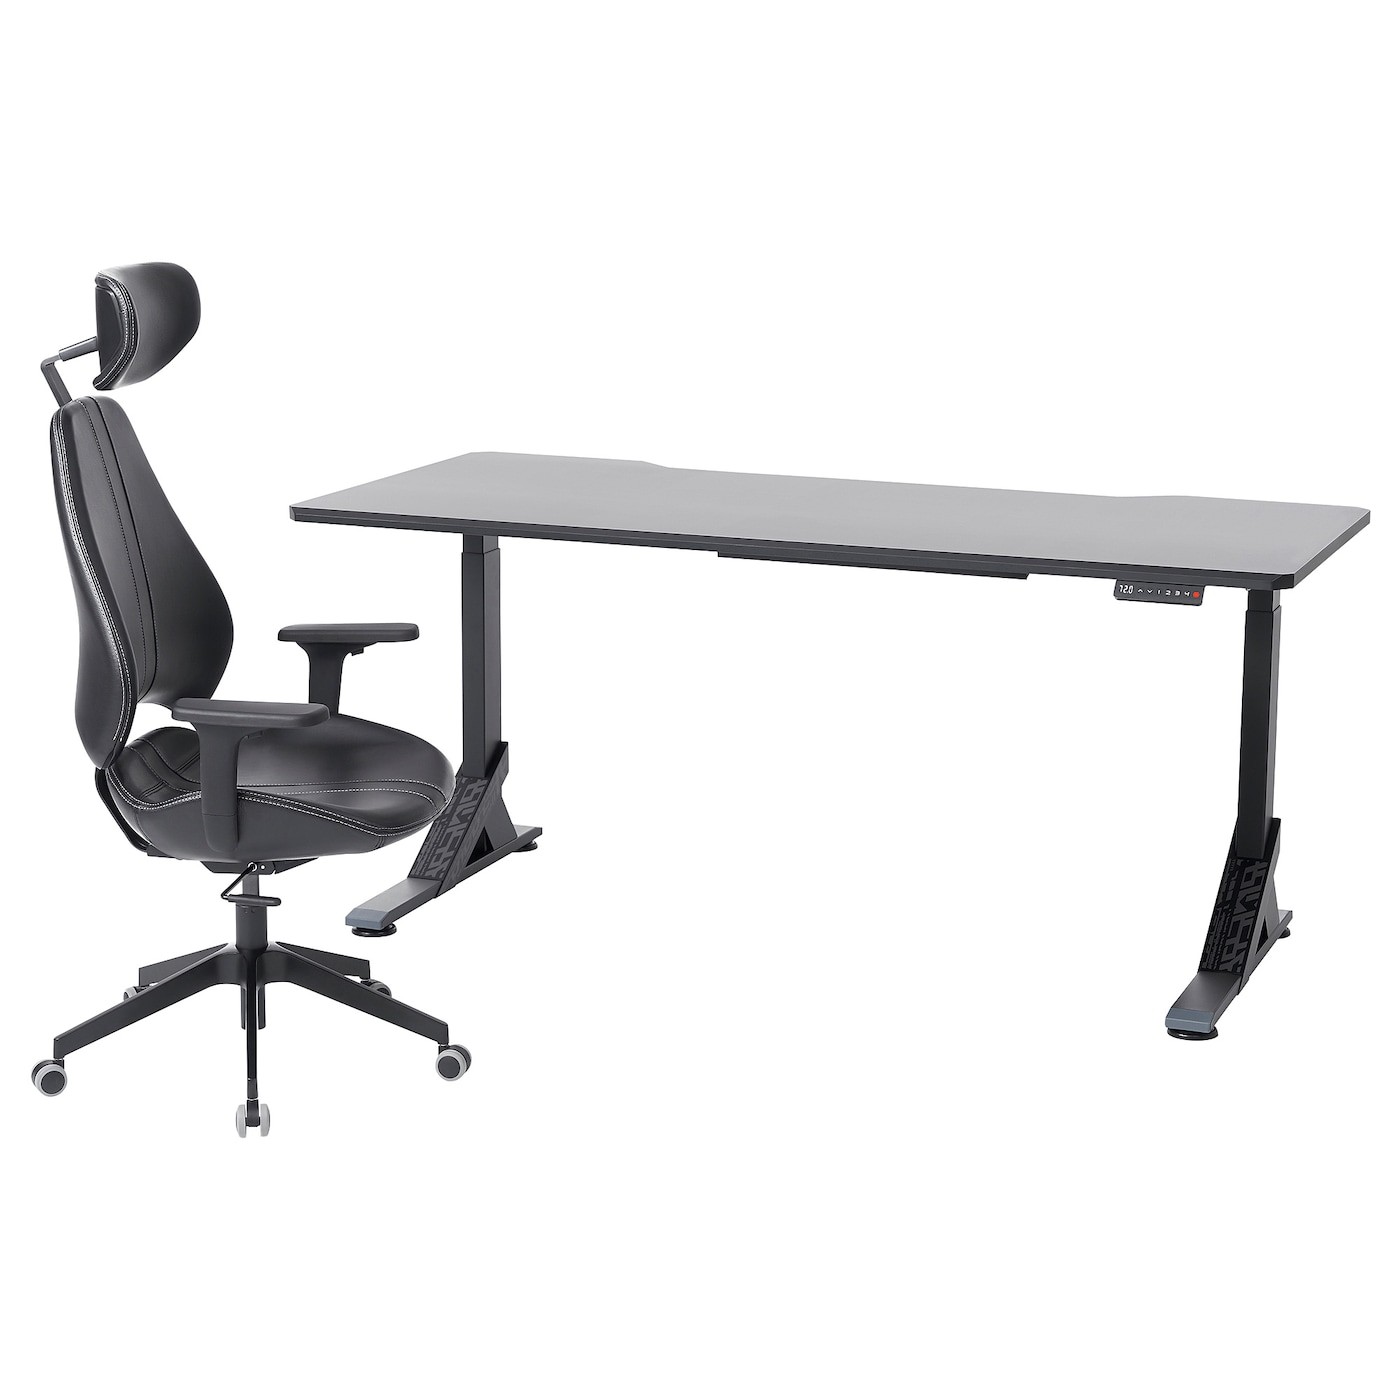 UPPSPEL / GRUPPSPEL Gaming desk and chair